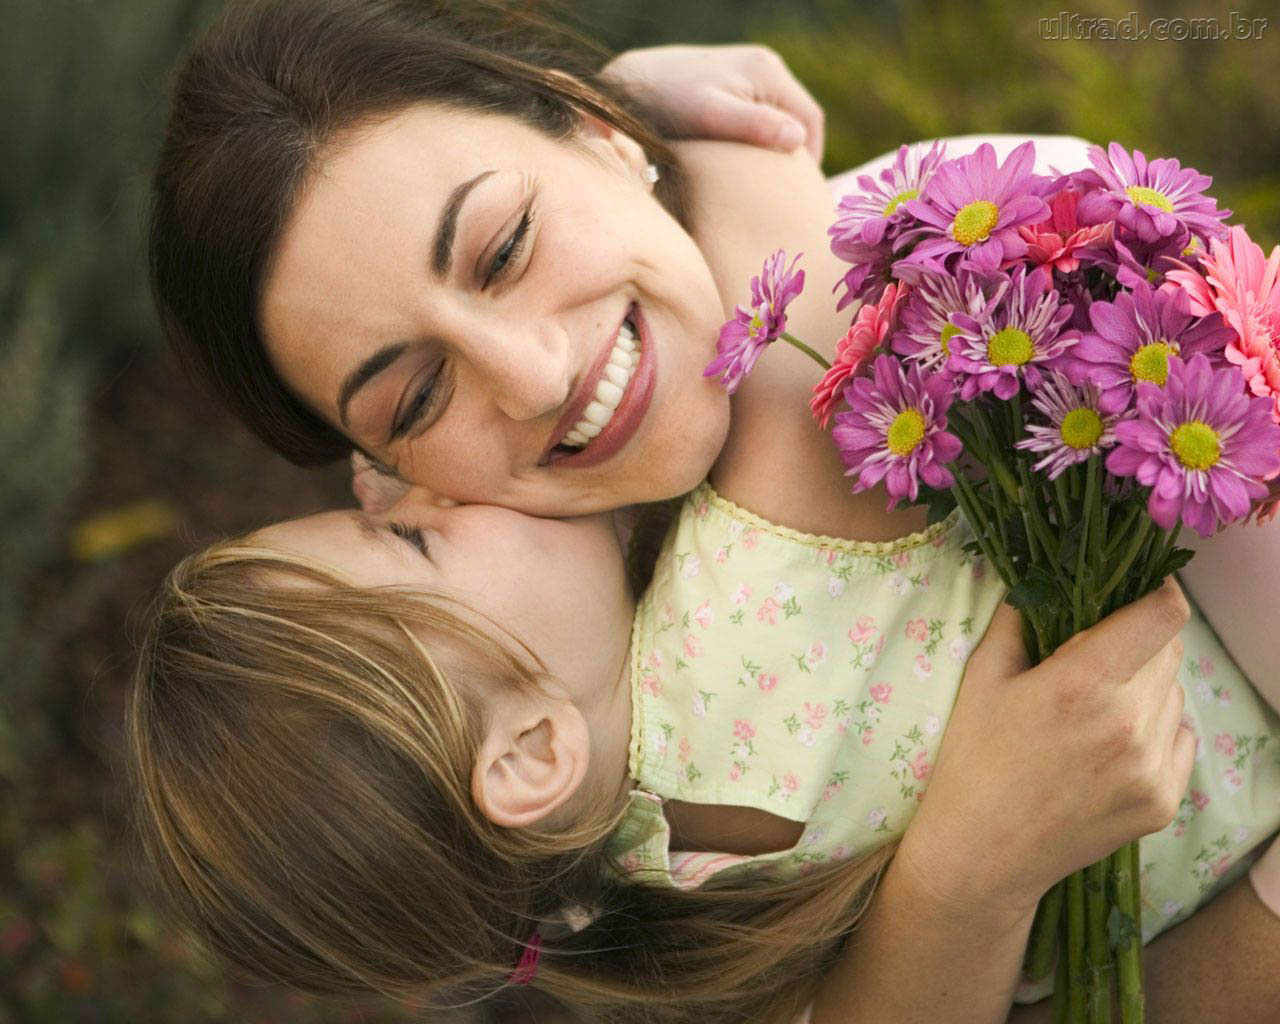 annelere alınabilecek anlamlı hediyeler, anneler günü ne zaman 2014 te, anneler günü içni anlamlı güzel mesajlar